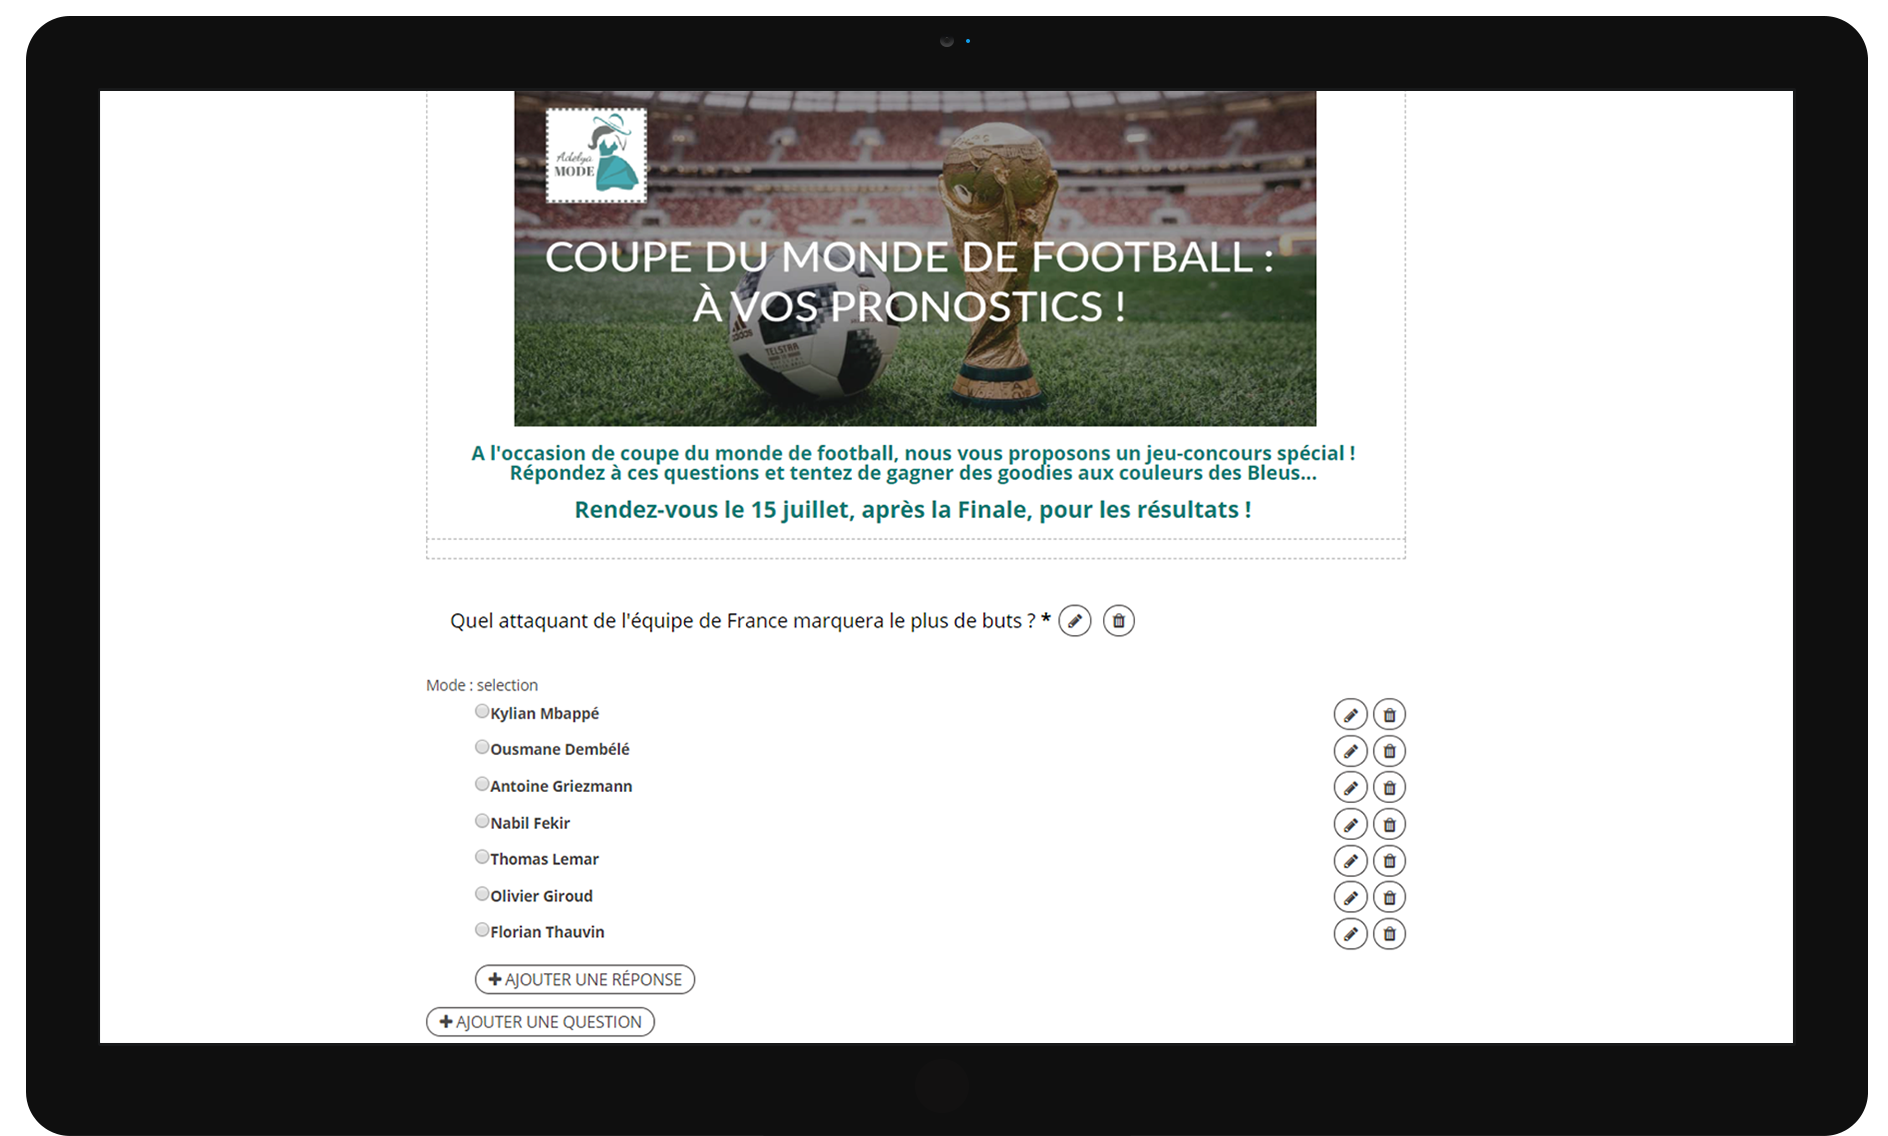 Questionnaire réalisé avec Adelya Loyalty Operator pour la Coupe du Monde de football 2018